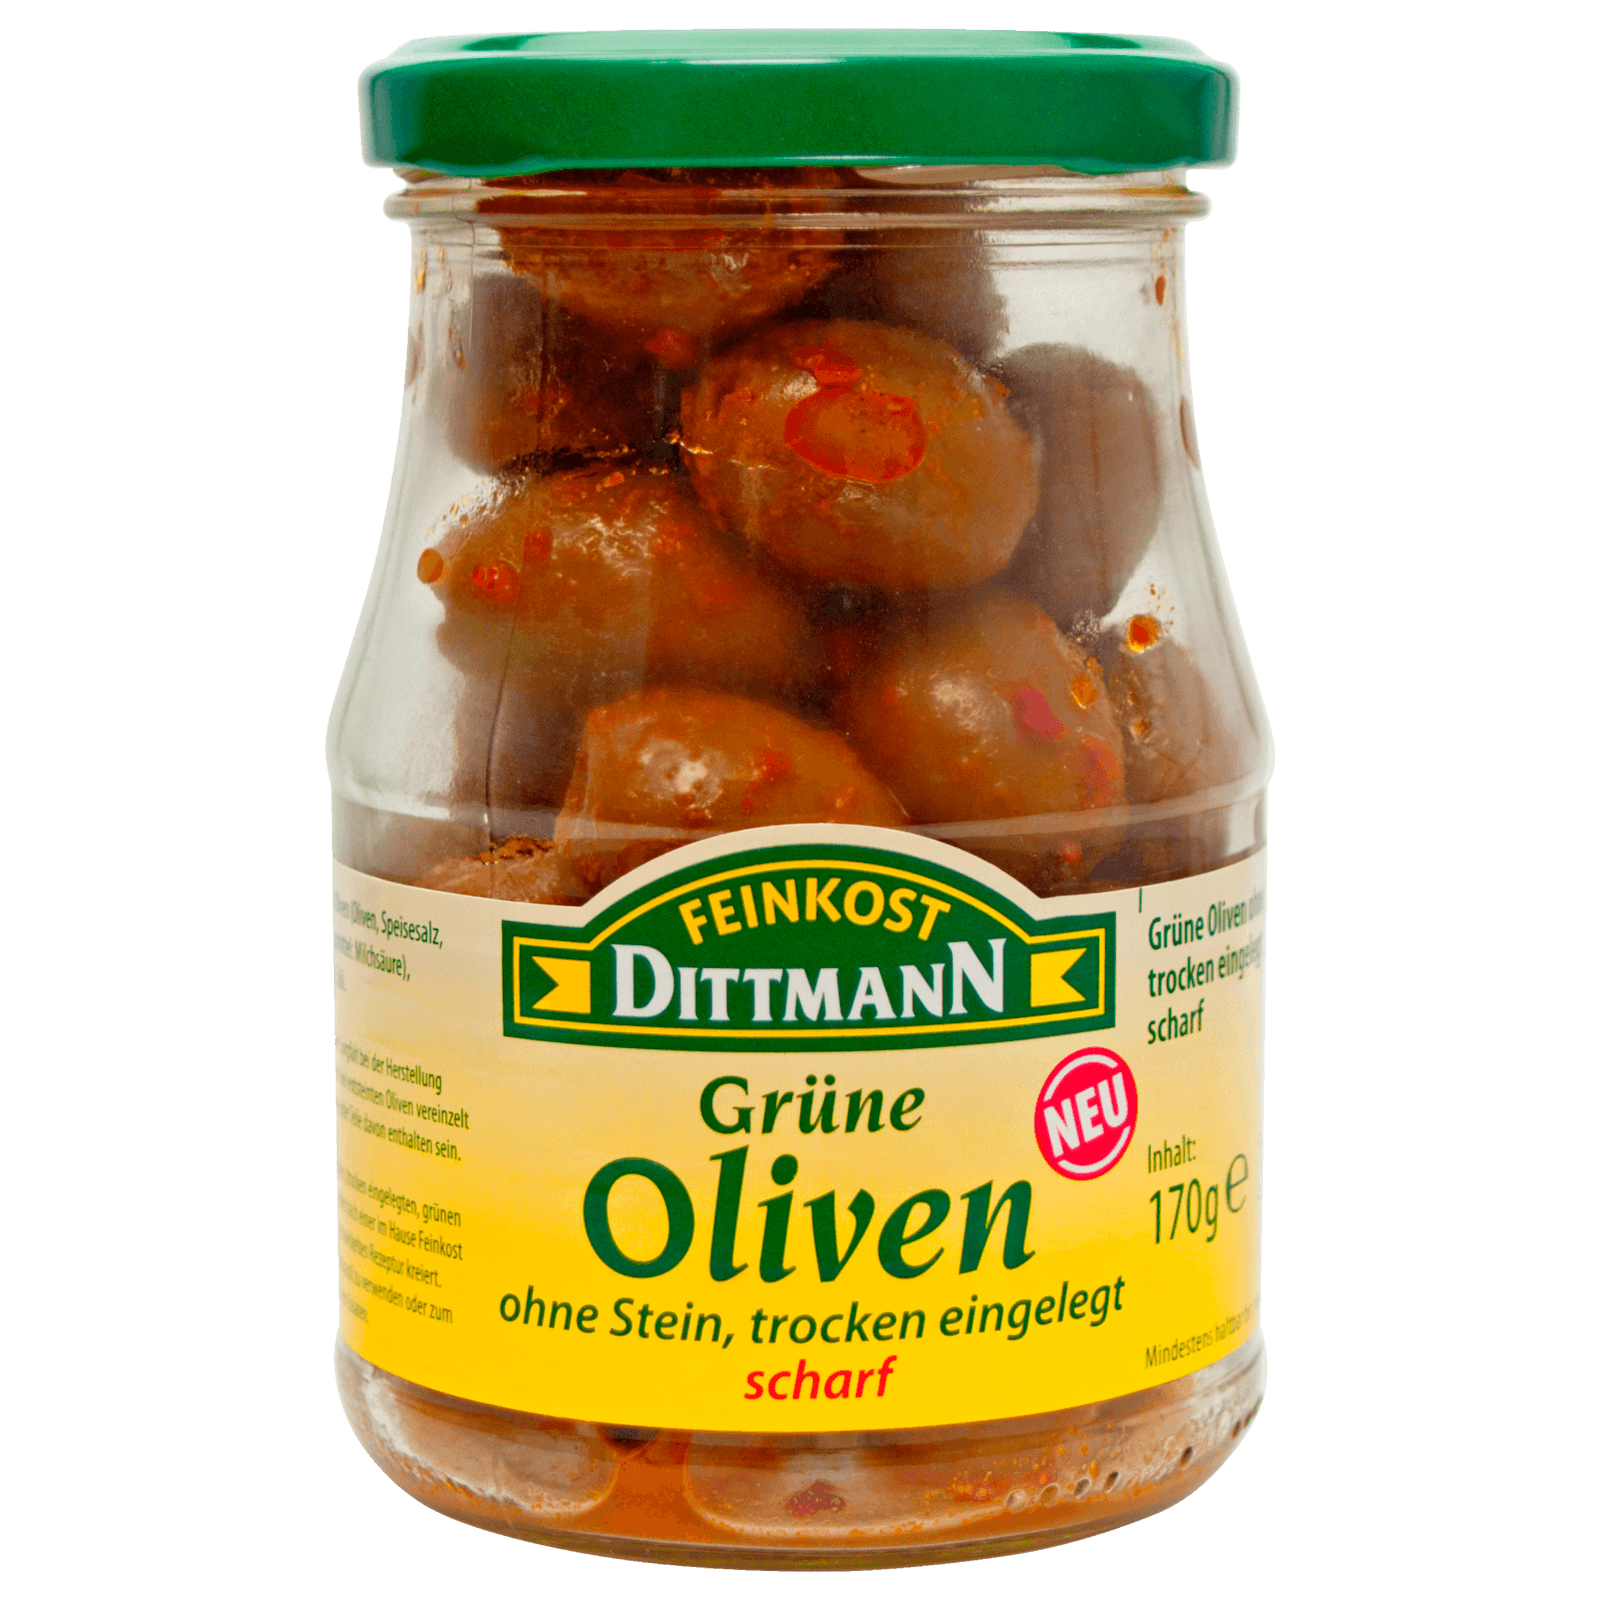 Feinkost Dittmann Grüne Oliven trocken eingelegt & scharf 170g  für 3.29 EUR